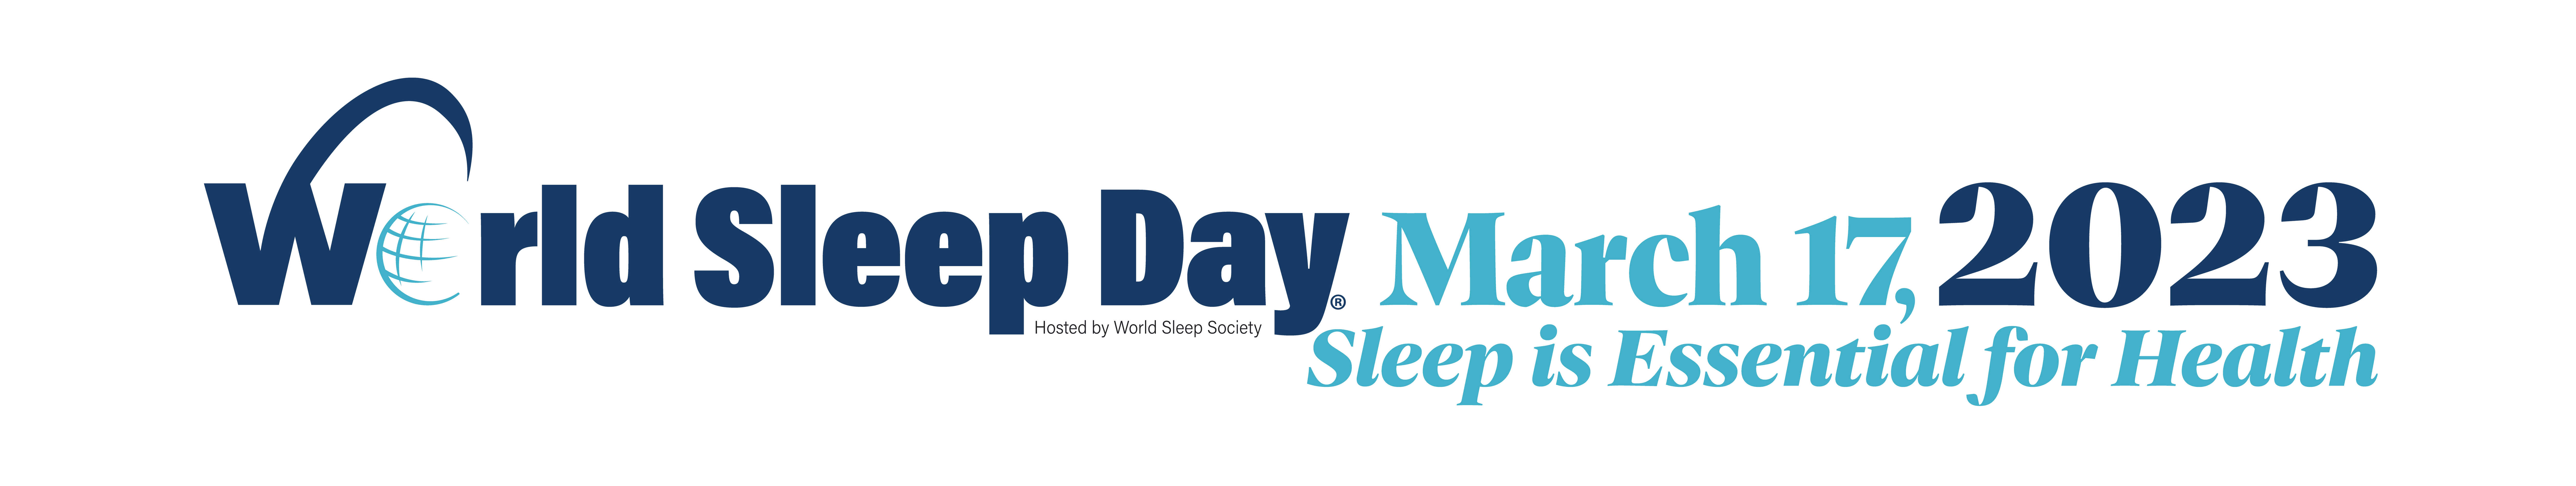 World Sleep Day 2023 Project Sleep